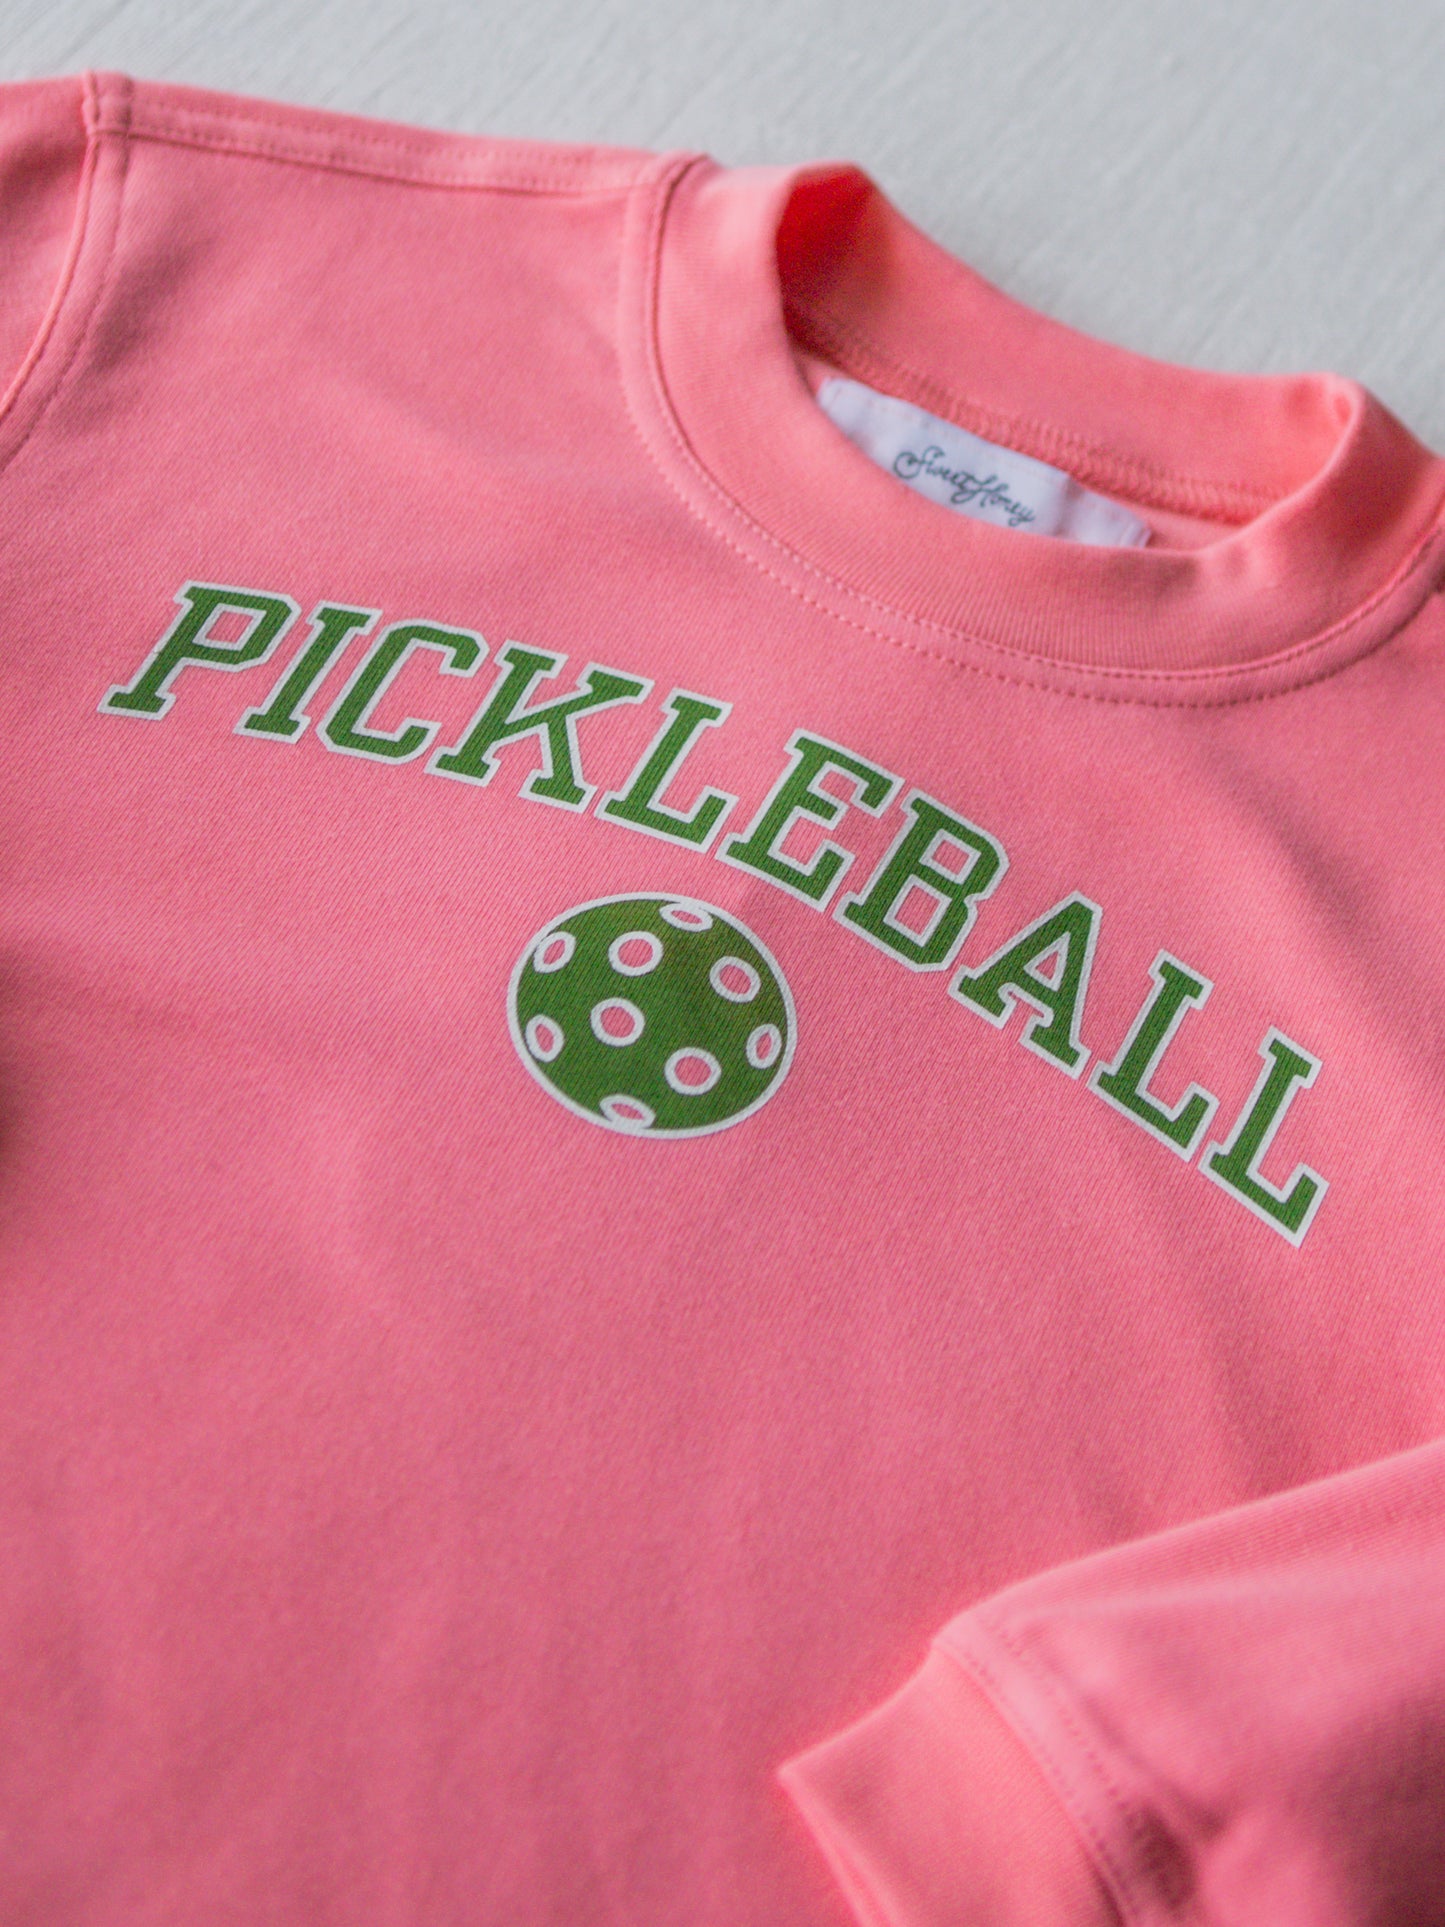 Warm Knit Sweatshirt - Pickleball Pink